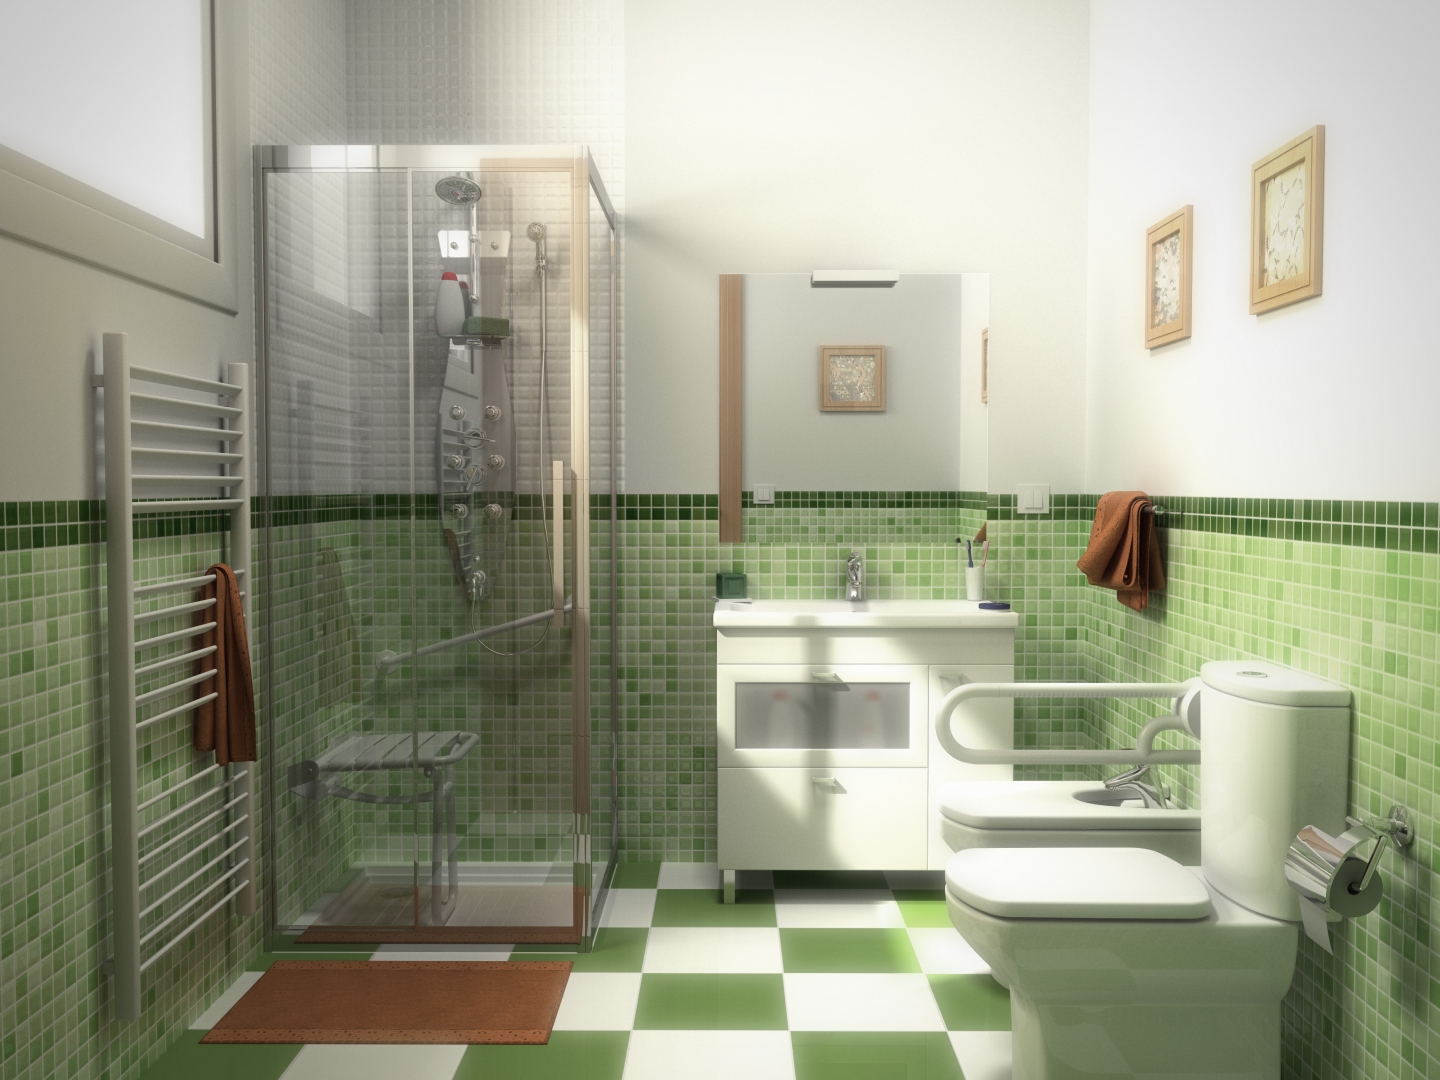 Roobio Estudio Creativo - Proyectos: Renders de mamparas de ducha.  Infografía, Diseño y Animación 3D, Renders, Perspectivas